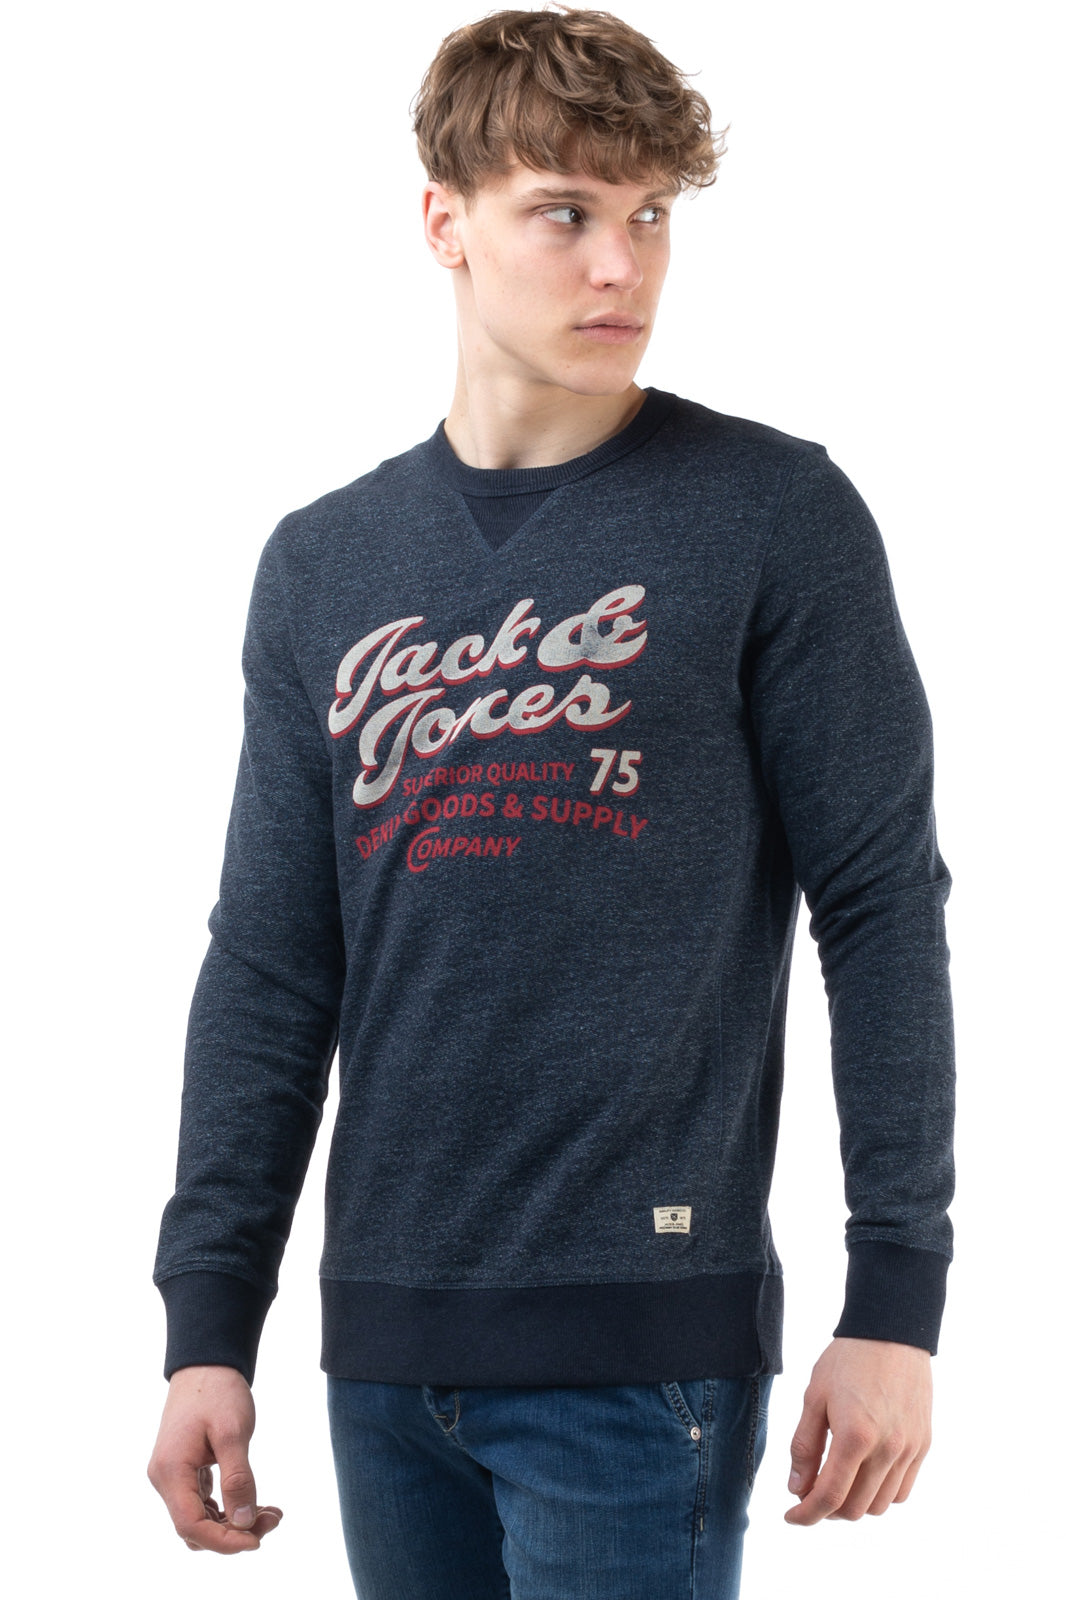 JACK & JONES PREMIUM Sweatshirt Size S Coated Front Worn Look Melange Effect gallery main photo